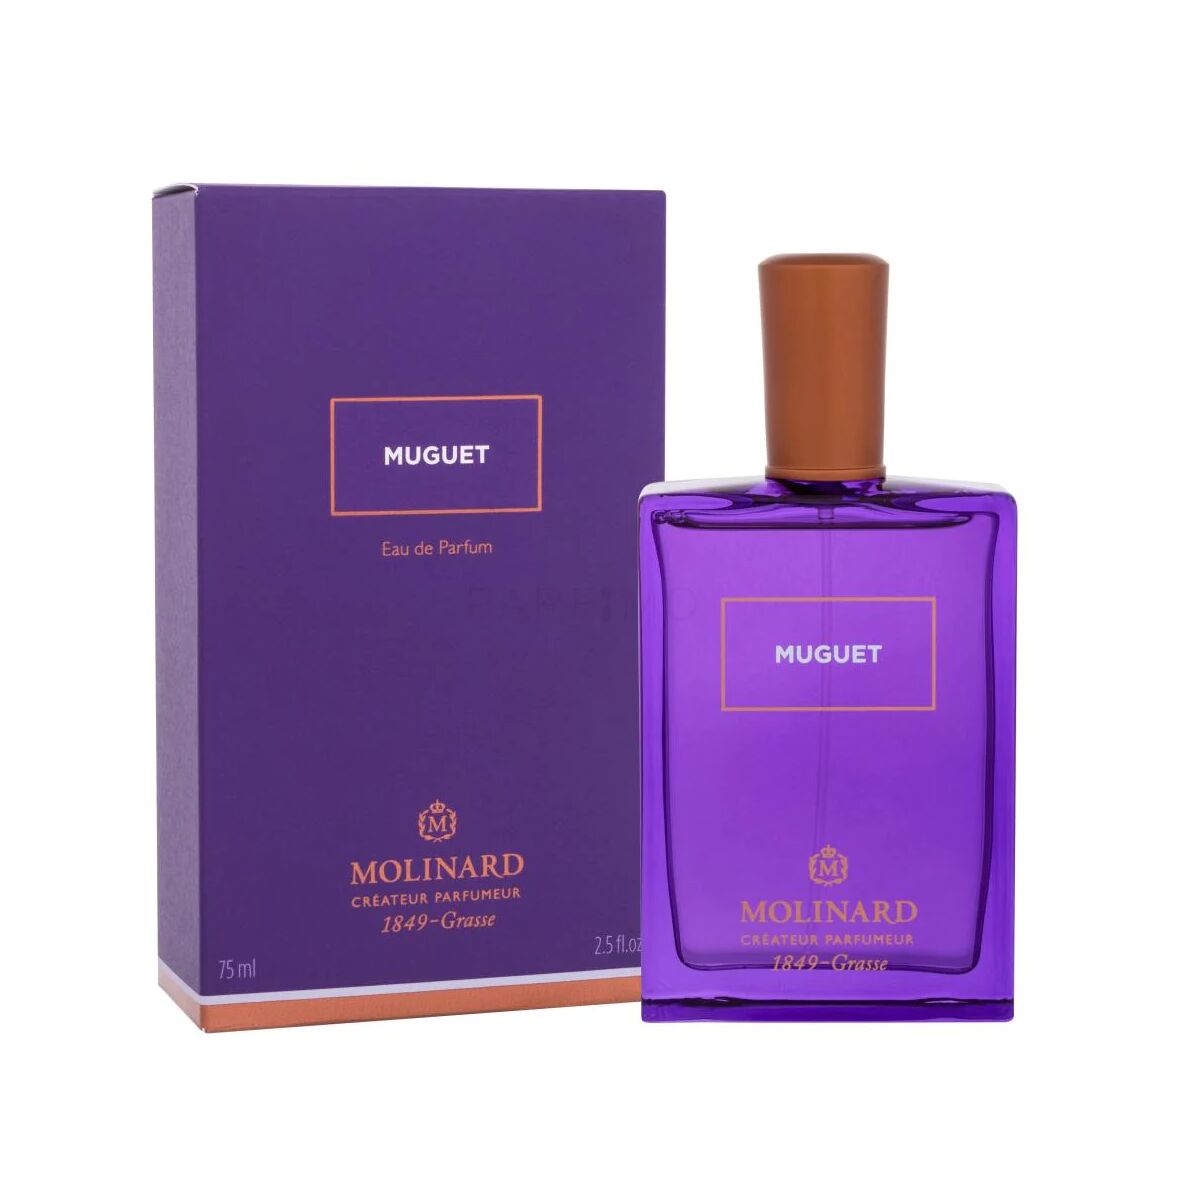 Kaufe Unisex-Parfüm Molinard Muguet EDP 75 ml bei AWK Flagship um € 71.00